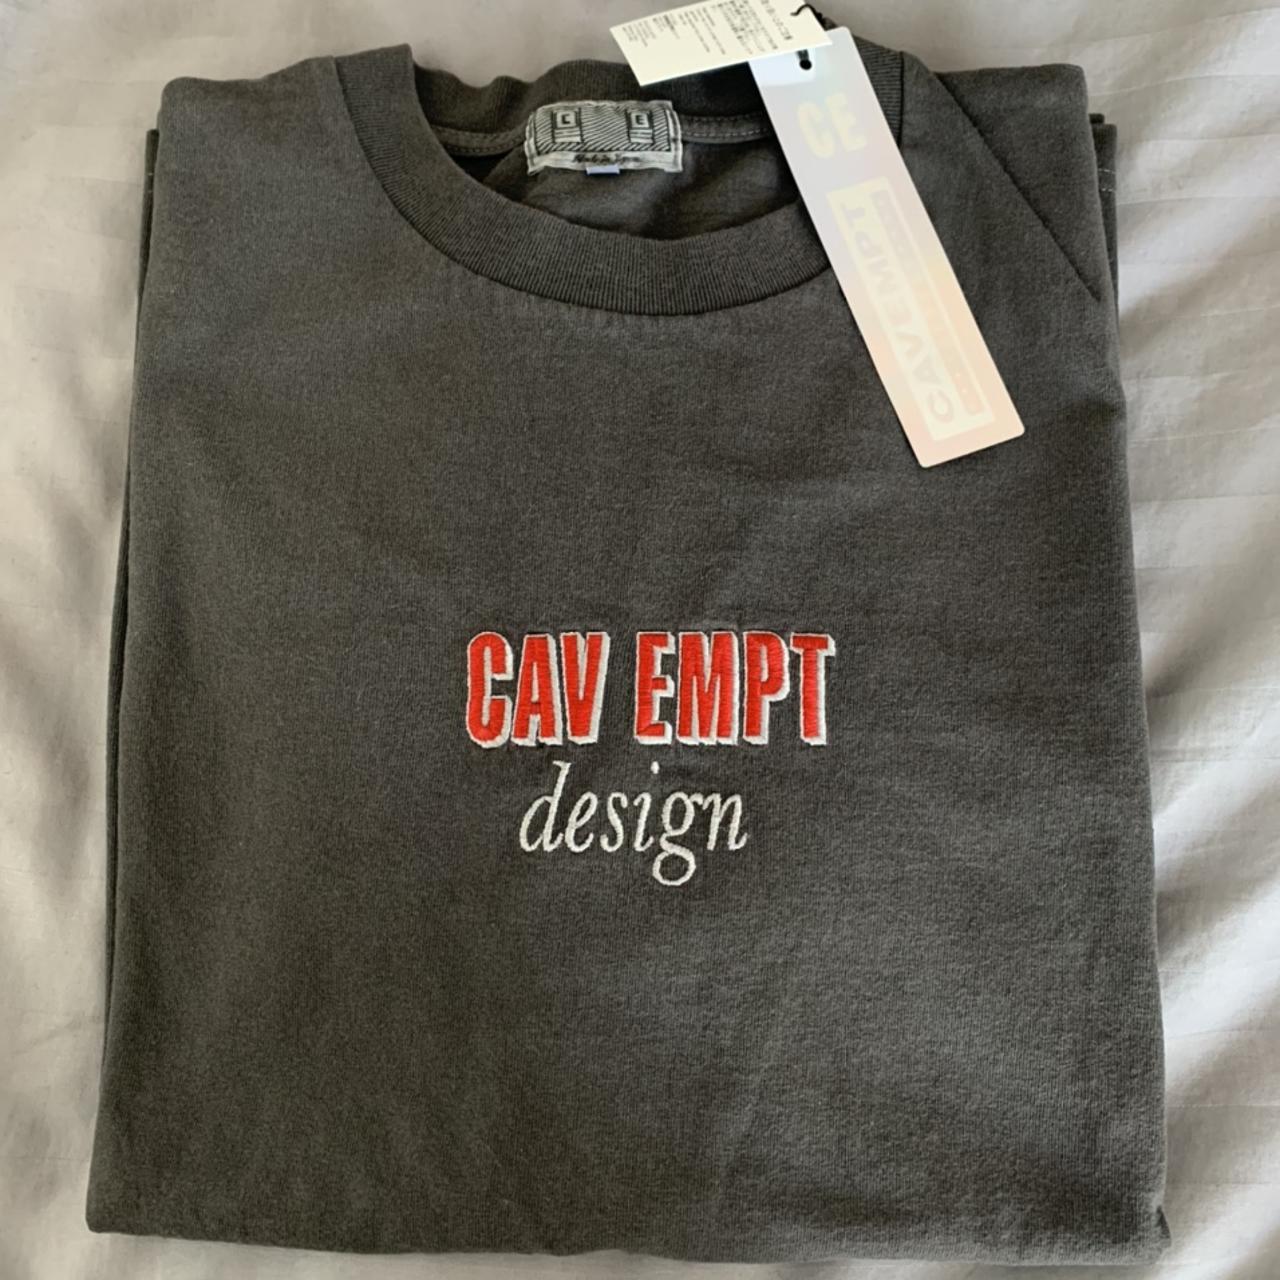 Cav Empt Design Overdye T-shirt from Fall 2018 You - Depop